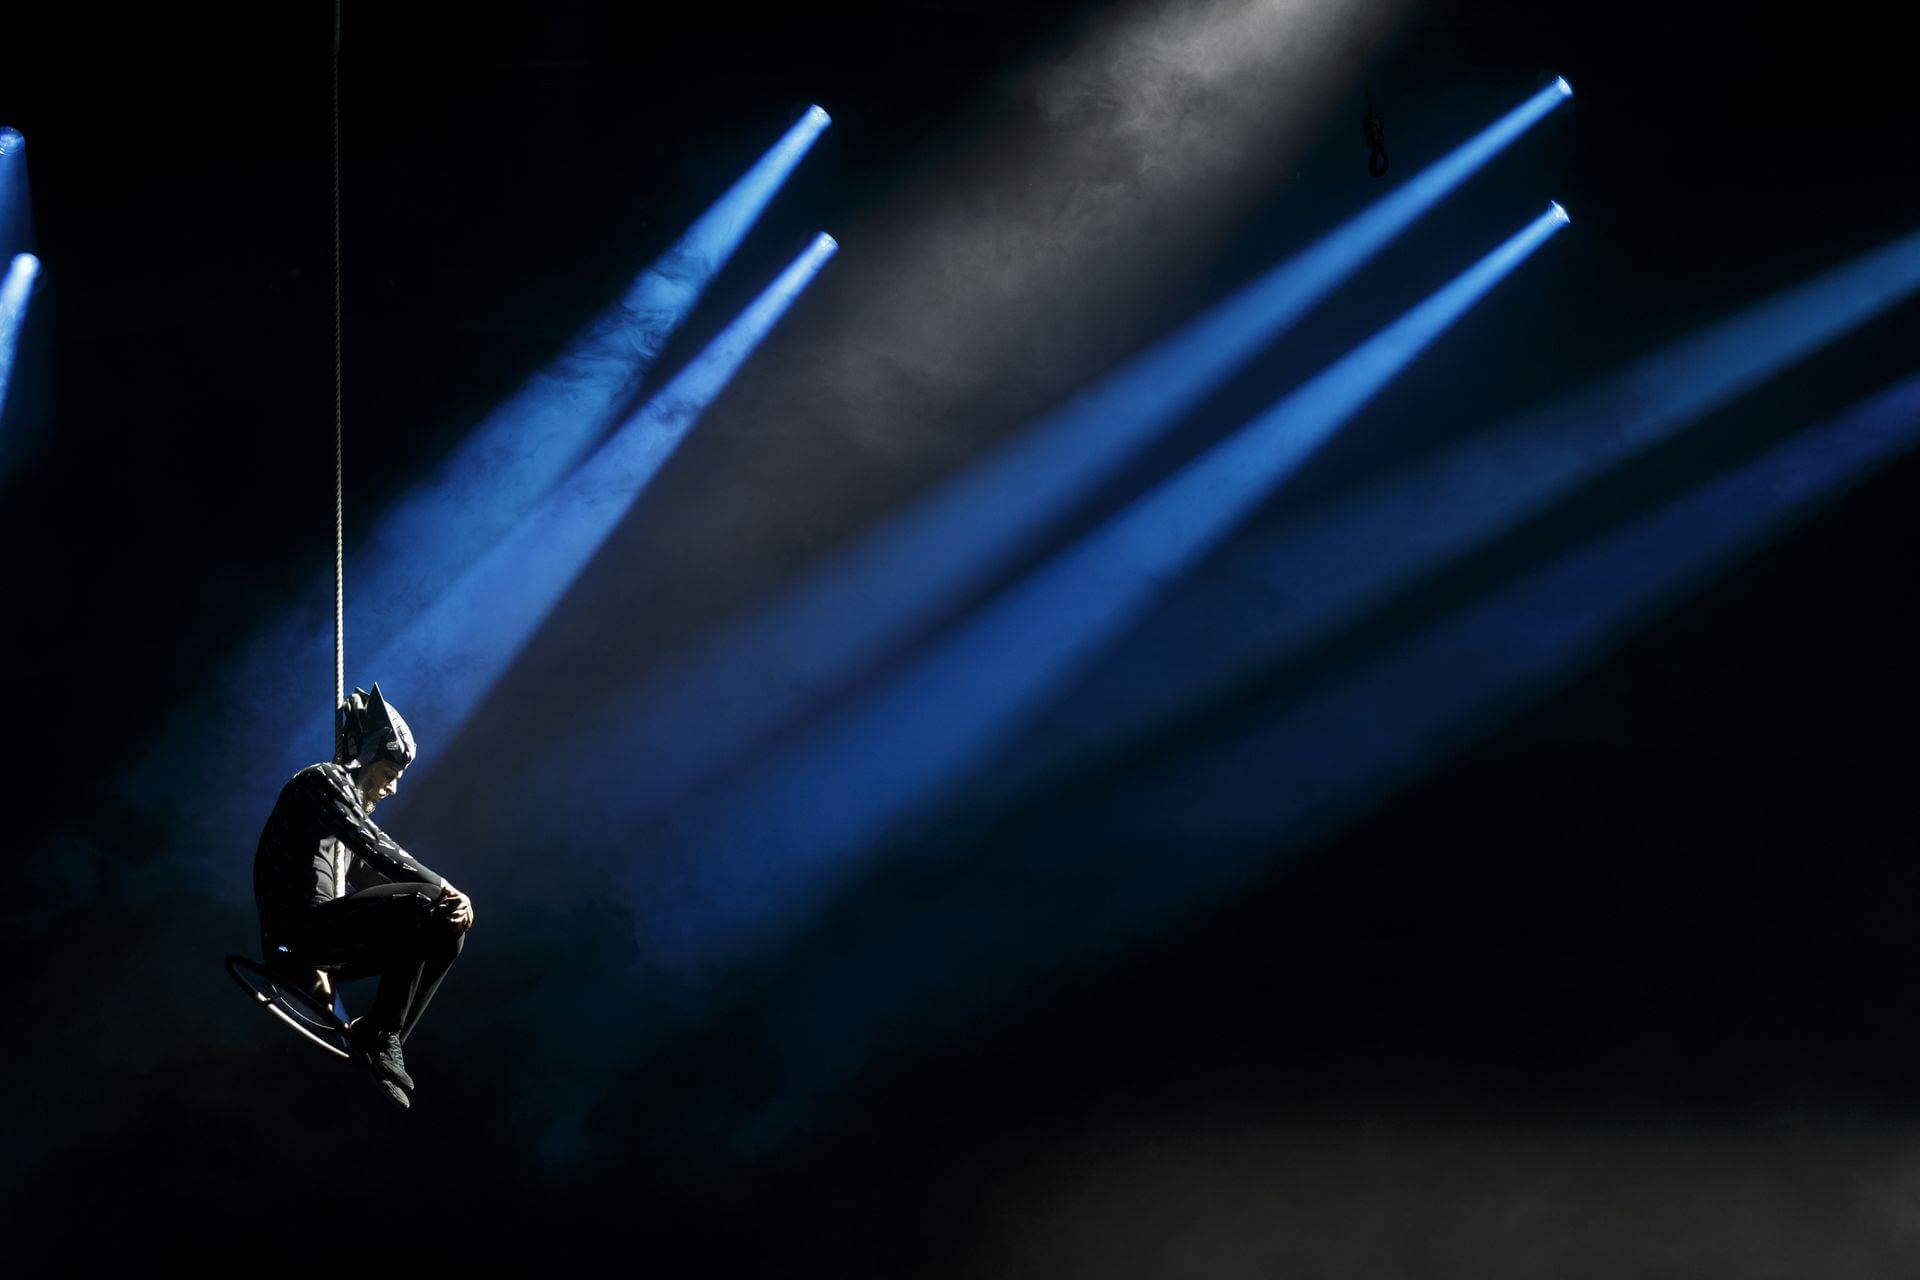 Scalada - Stelar by Cirque du Soleil 2017: acrobacias en cuerda